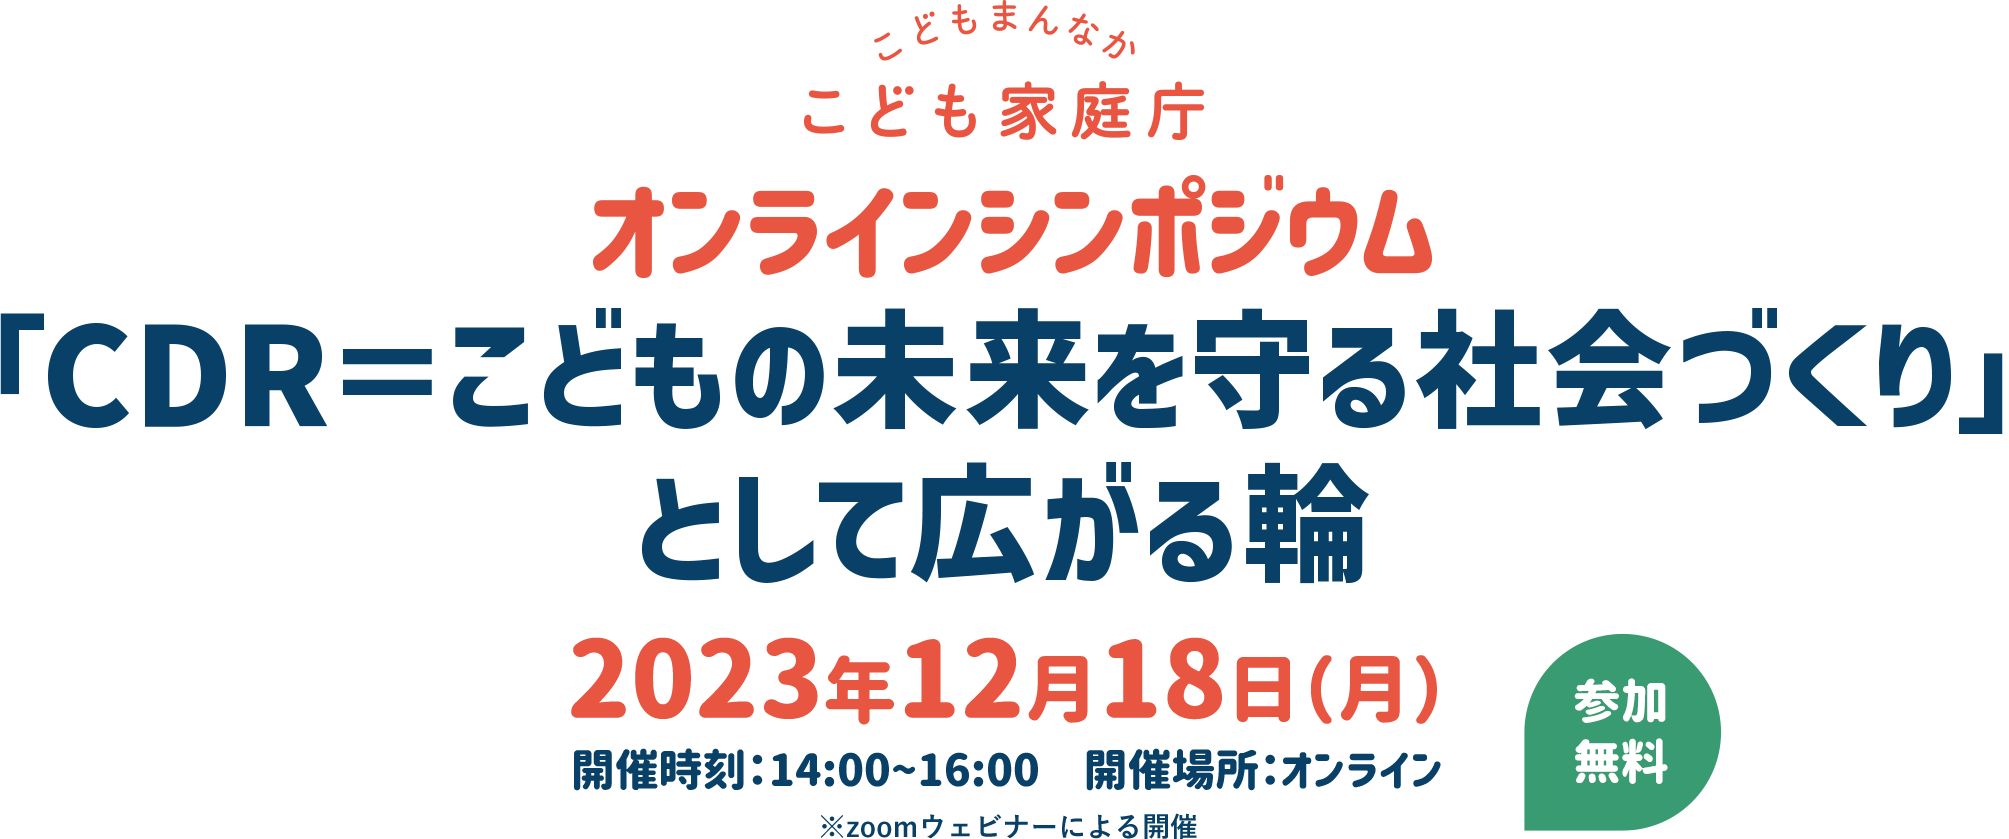 オンラインシンポジウム 「CDR＝こどもの未来を守る社会づくり」として広がる輪 2023年12月18日(月)開催時刻：14:00~16:00　開催場所：オンライン ※zoomウェビナーによる開催　※参加ボタンは開催当日10時に表示します。